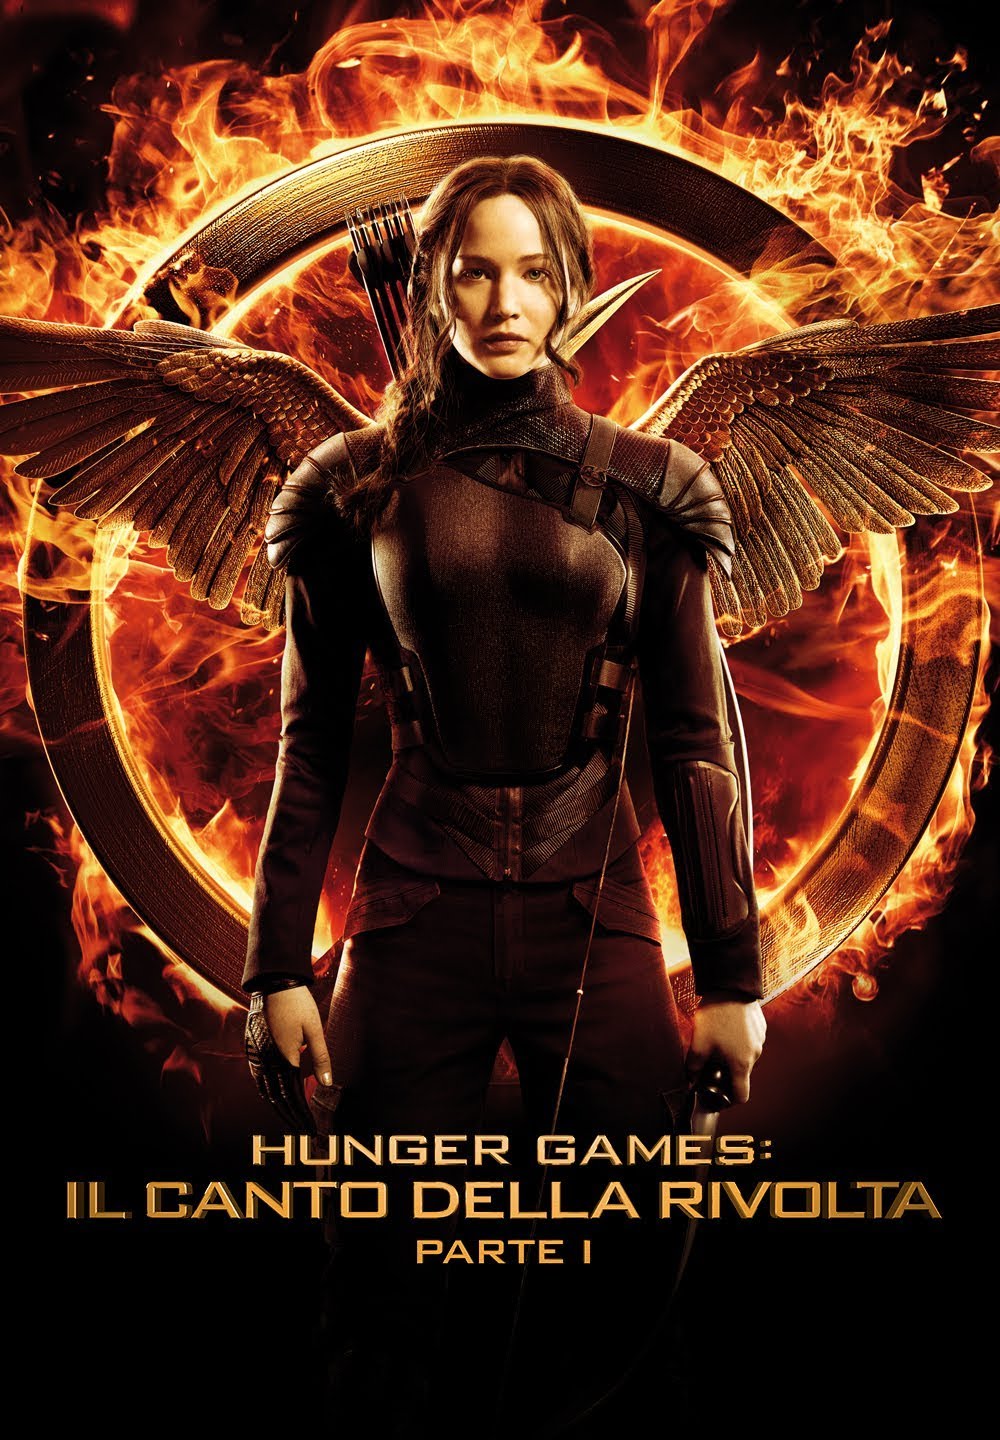 Hunger Games: Il canto della rivolta – Parte 1 [HD] (2014)